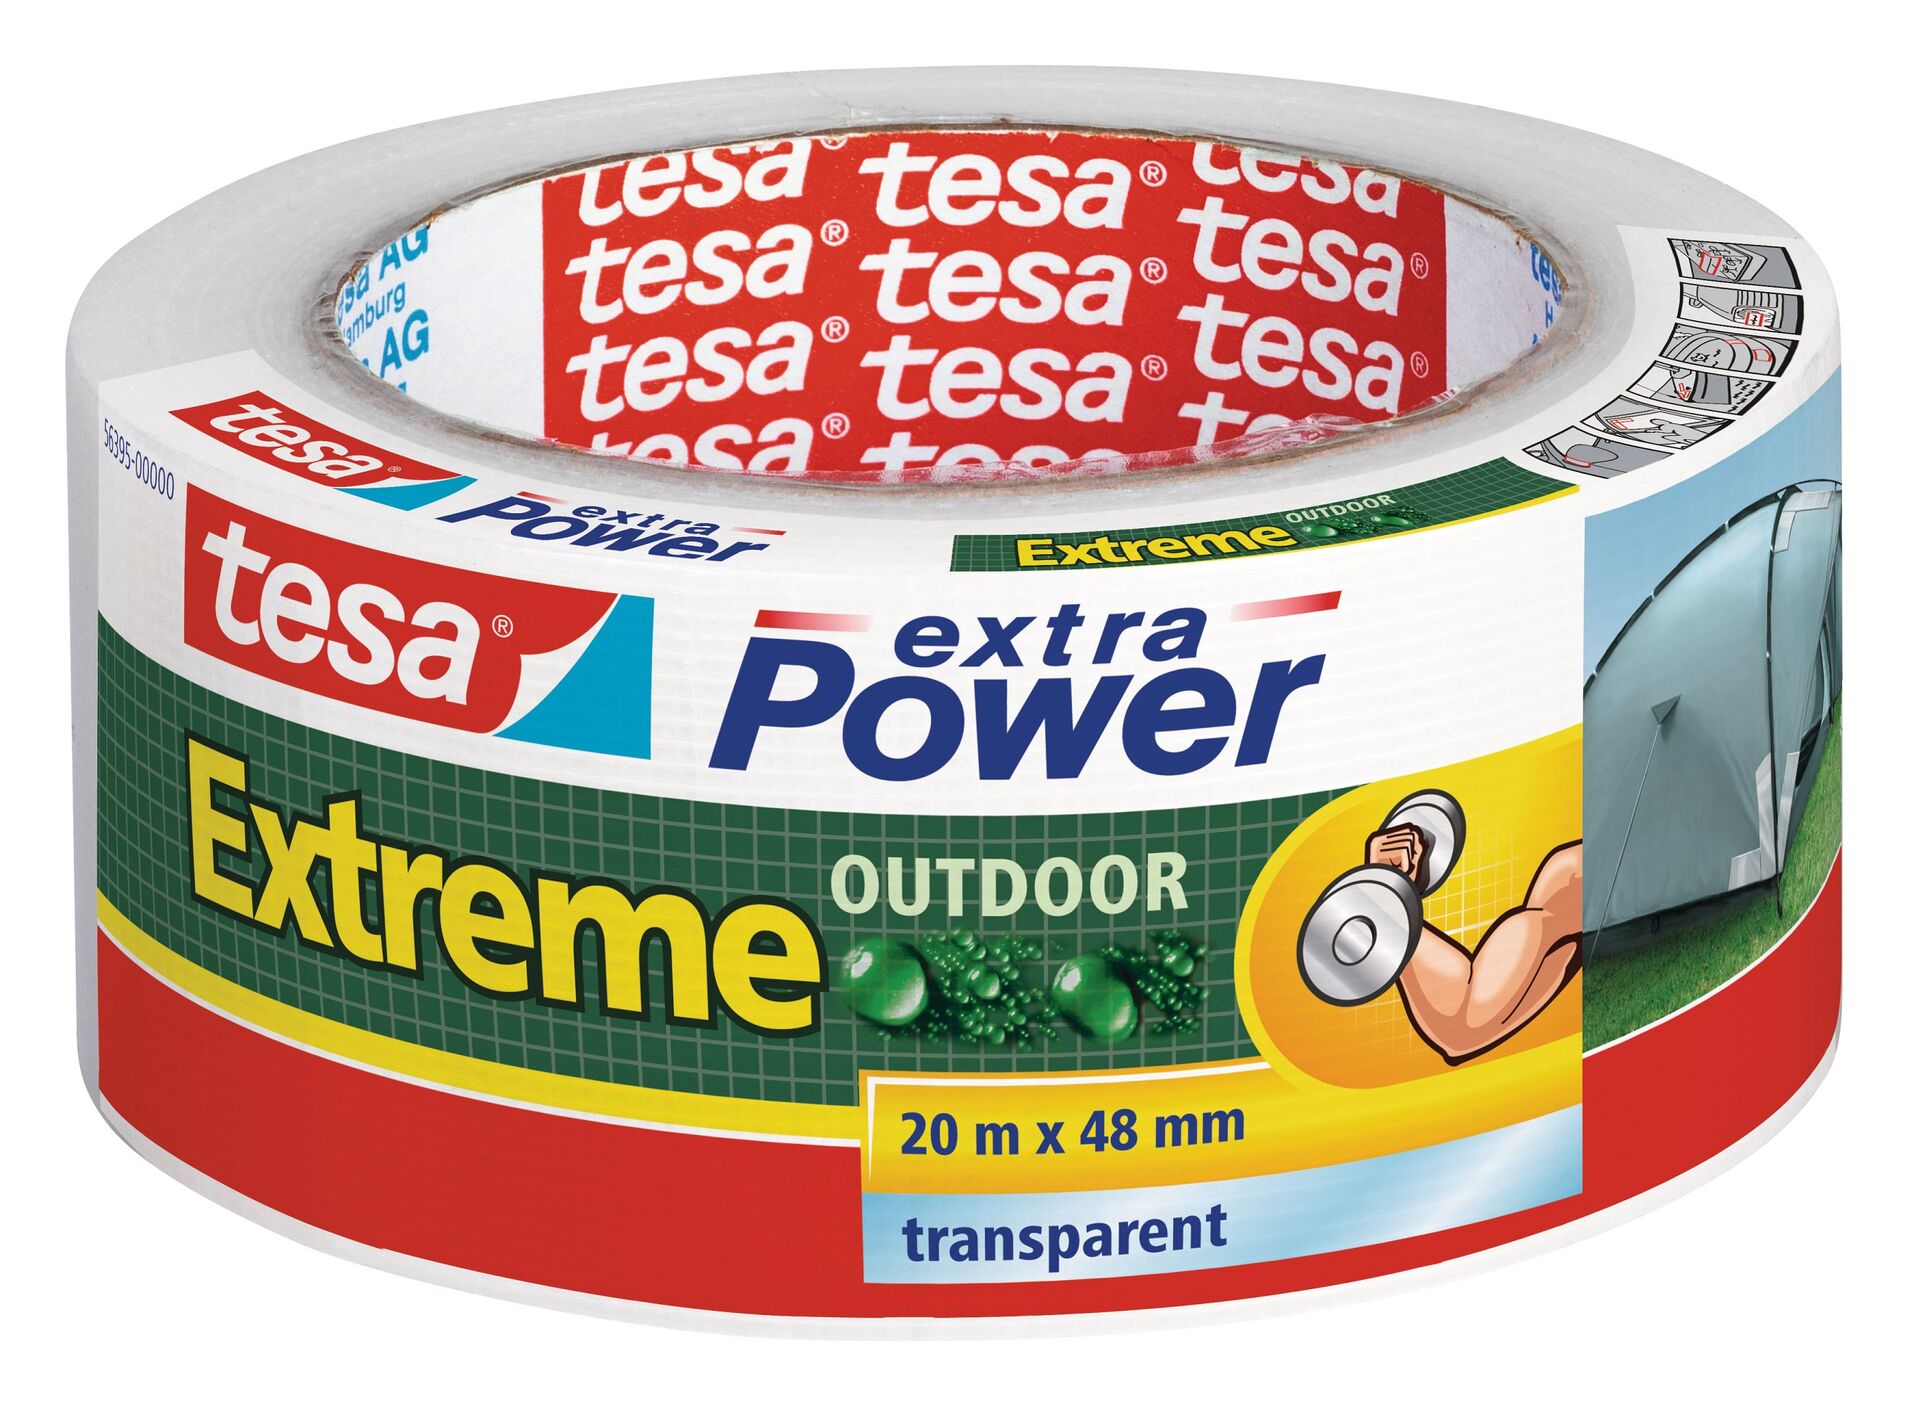 Tesa extra Power Extreme Outdoor